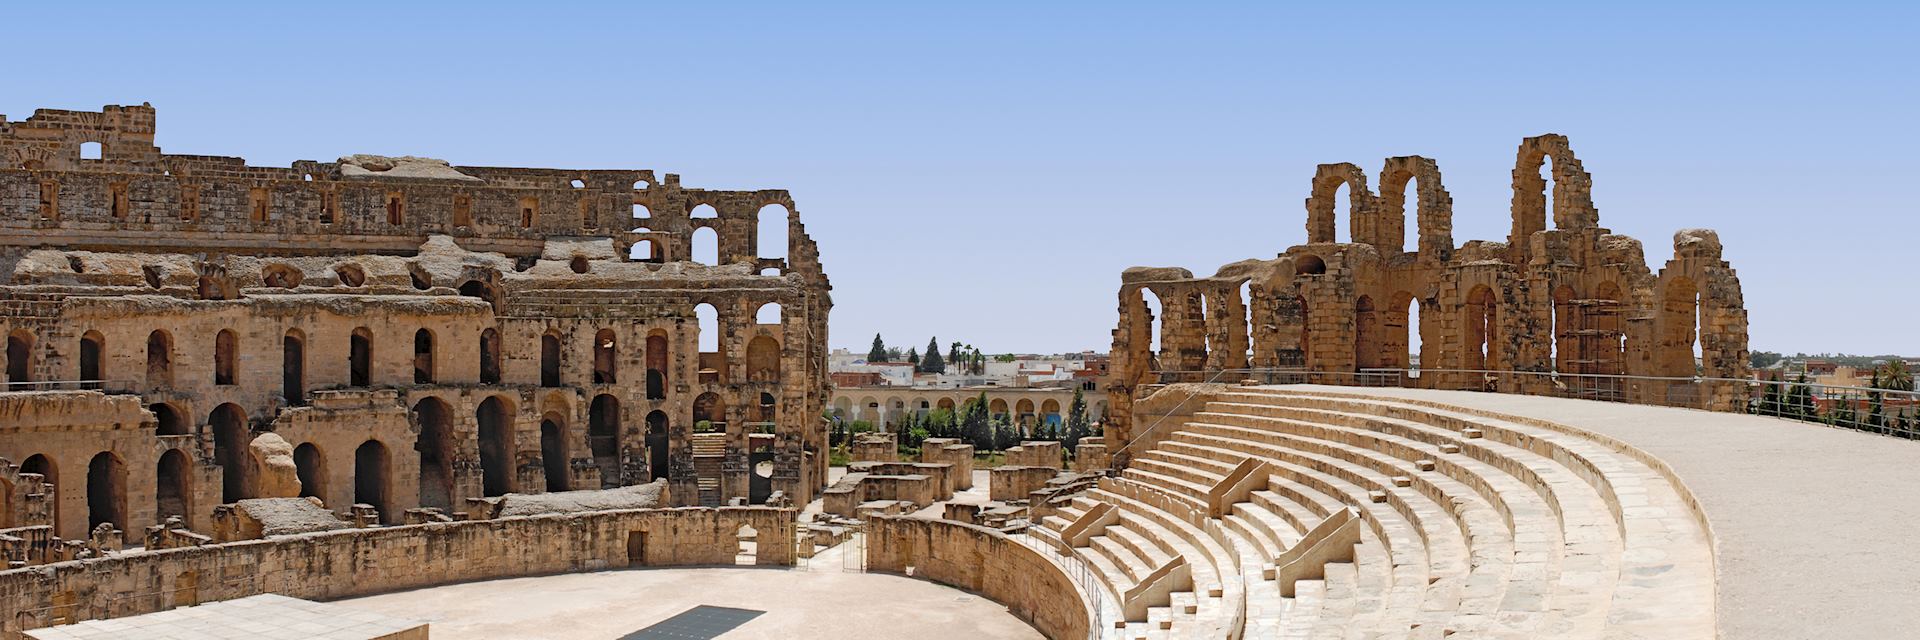 Amphitheatre at El Jem